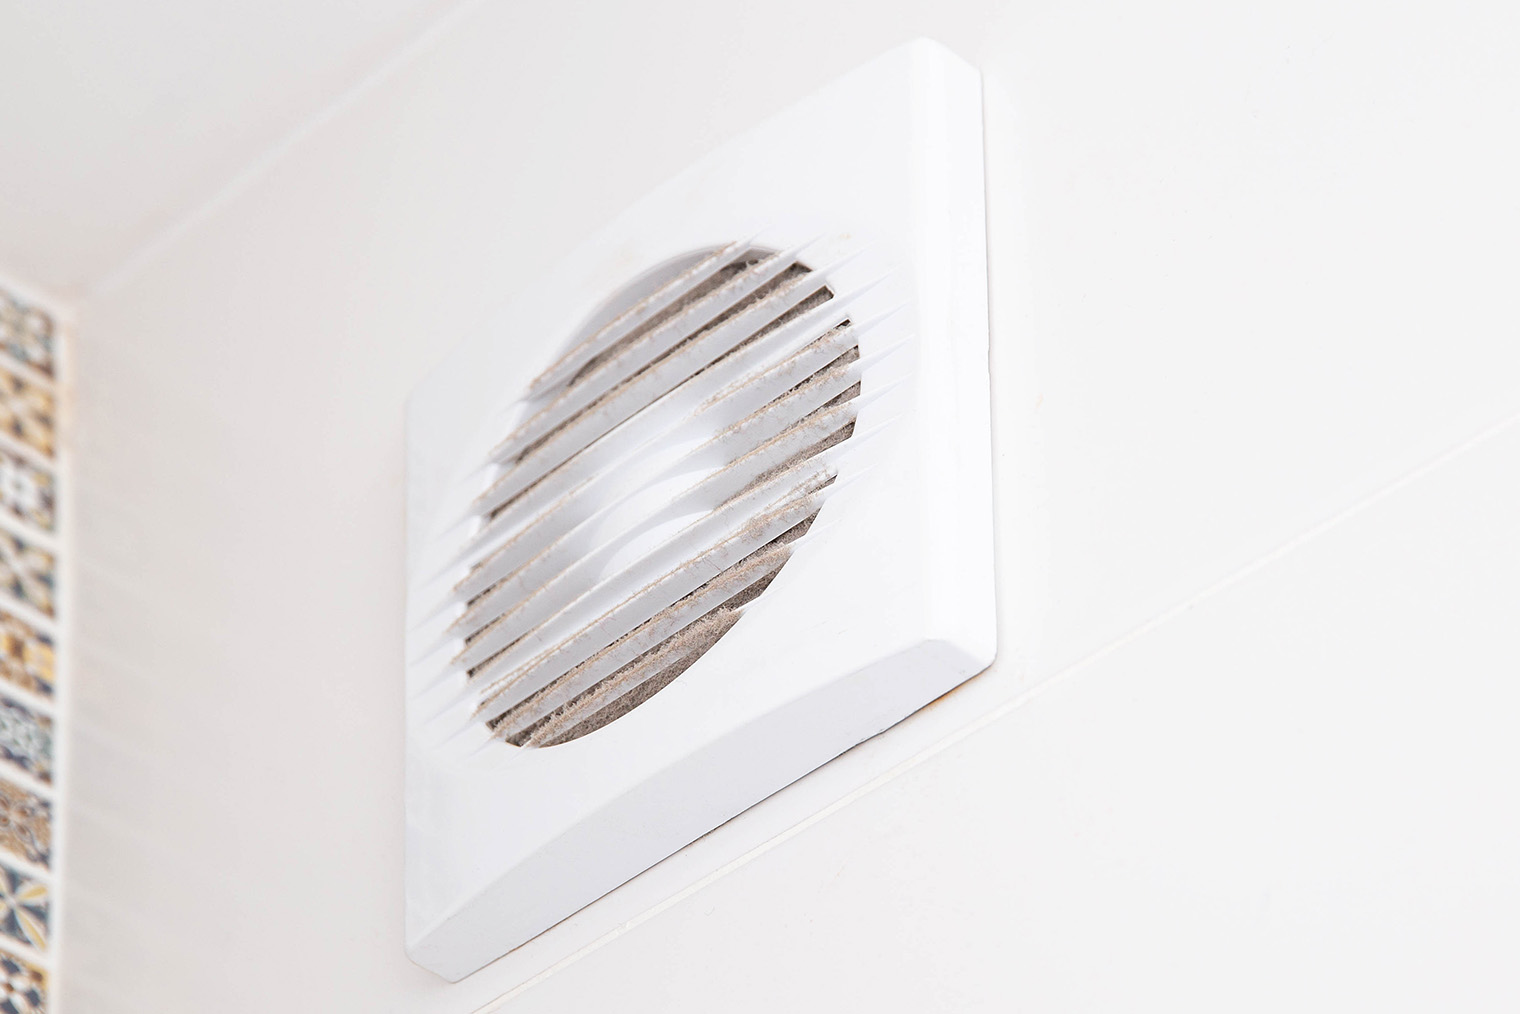 Внешне вытяжной вентилятор выглядит как обычная пластиковая вентрешетка. Но под ней вентилятор, который запитан от выключателя и запускается при включении света. Фотография: Henadzi Pechan / iStock